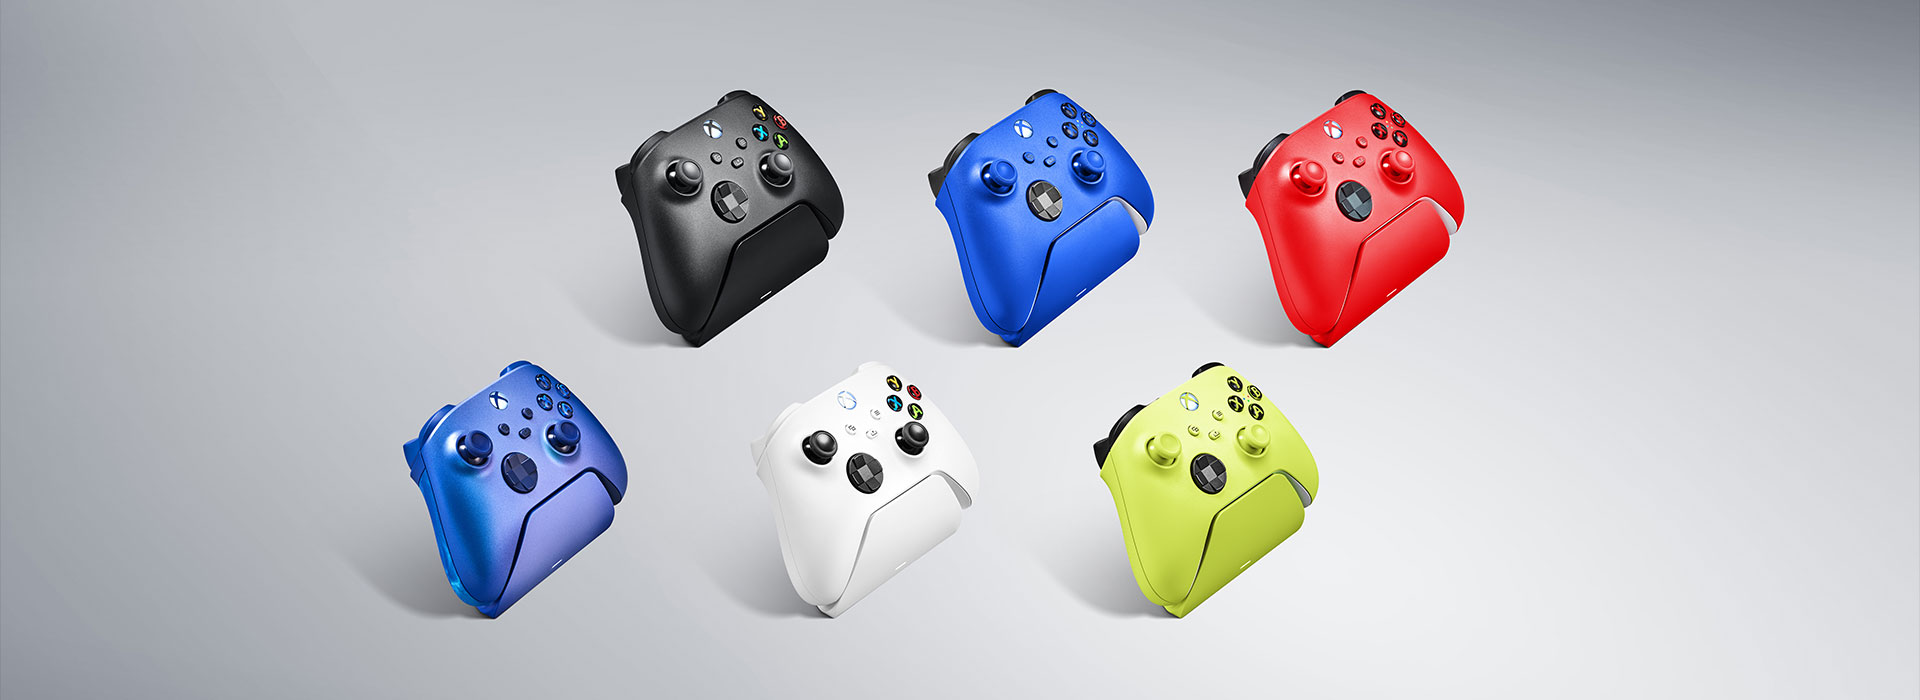 Design stanice Razer Universal Quick Charging Stand je přizpůsoben tak, aby dokonale ladila s originálním gamepadem i s dalším příslušenstvím Xbox v daném barevném provedení.